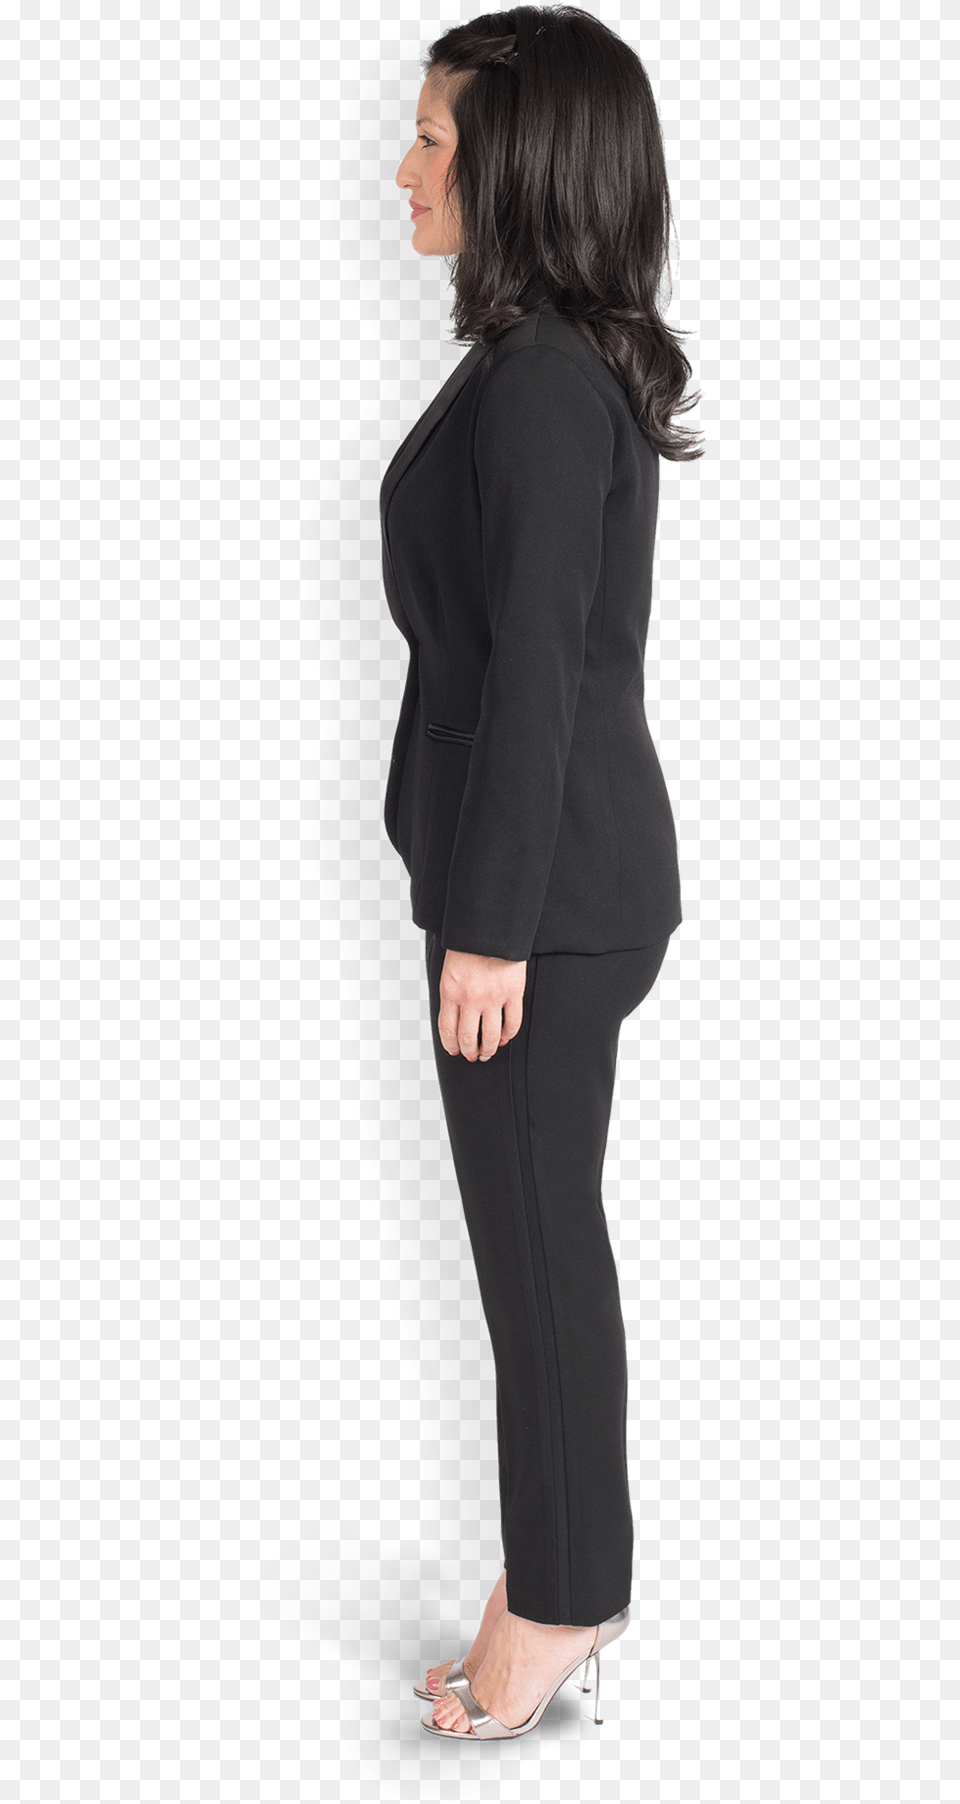 Women S Shawl Lapel Black Tuxedo Women39s Side View, Long Sleeve, High Heel, Formal Wear, Footwear Free Png